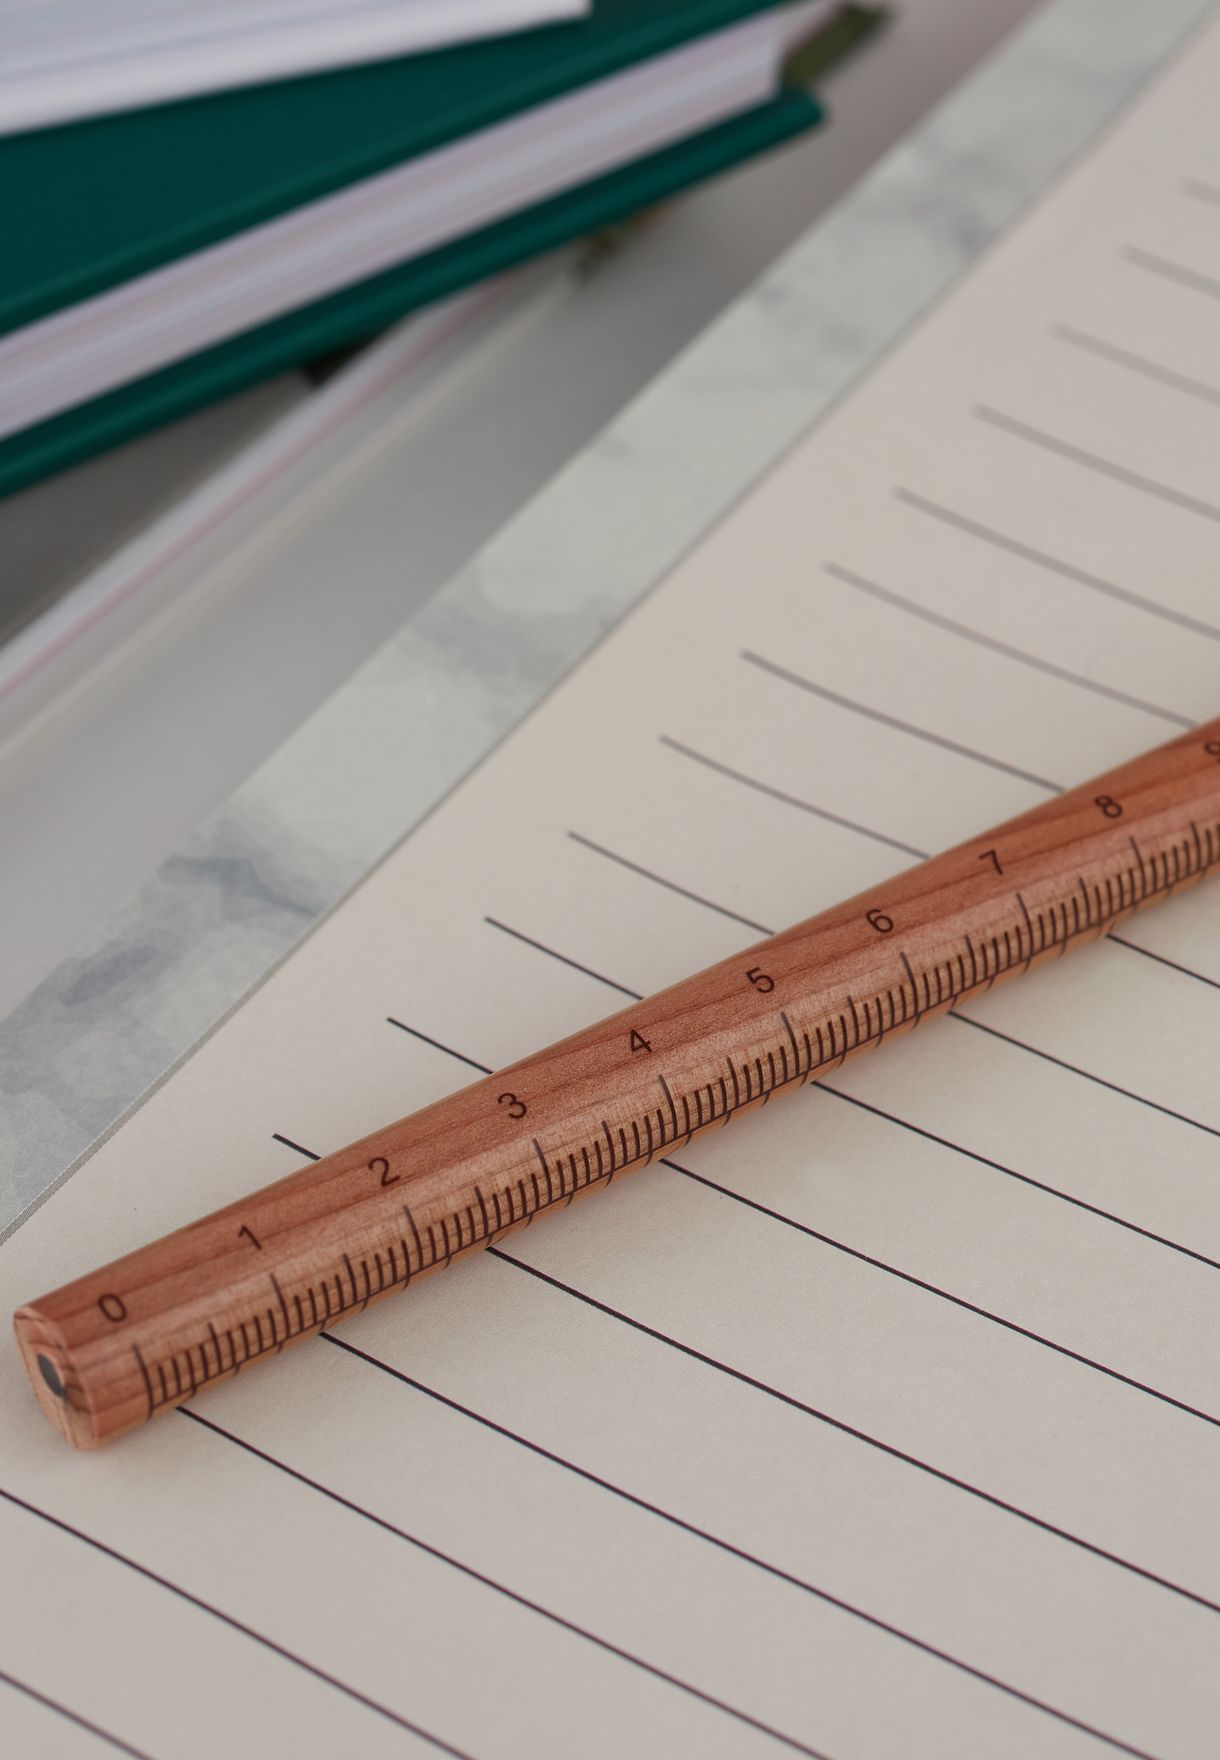 Ruler Pencil